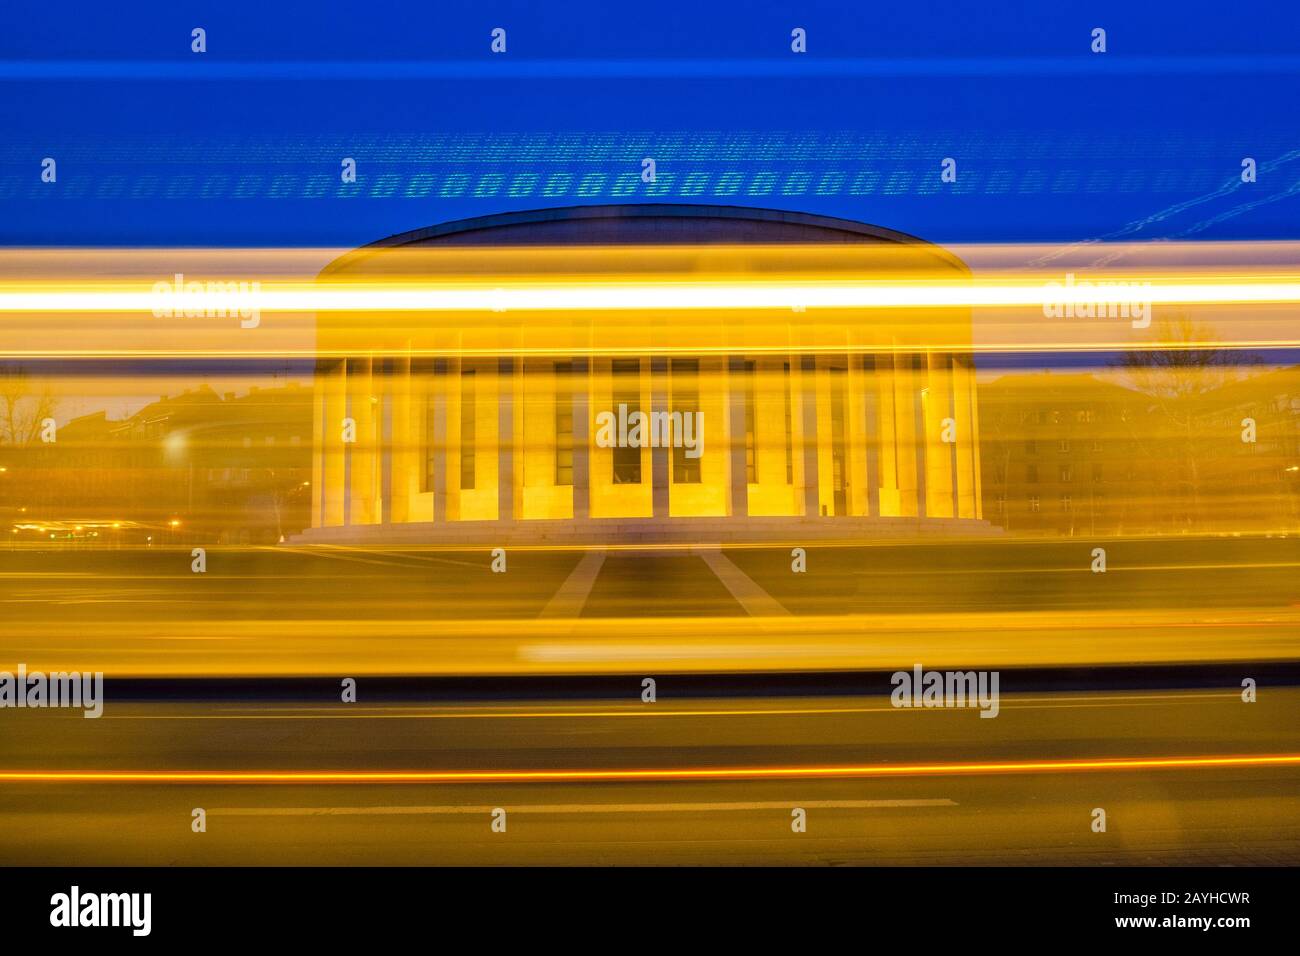 Croazia, città di Zagabria di notte, auto e tram sentieri sulla strada e monumentale colonna architettura in background, lunga esposizione, offuscata motio Foto Stock